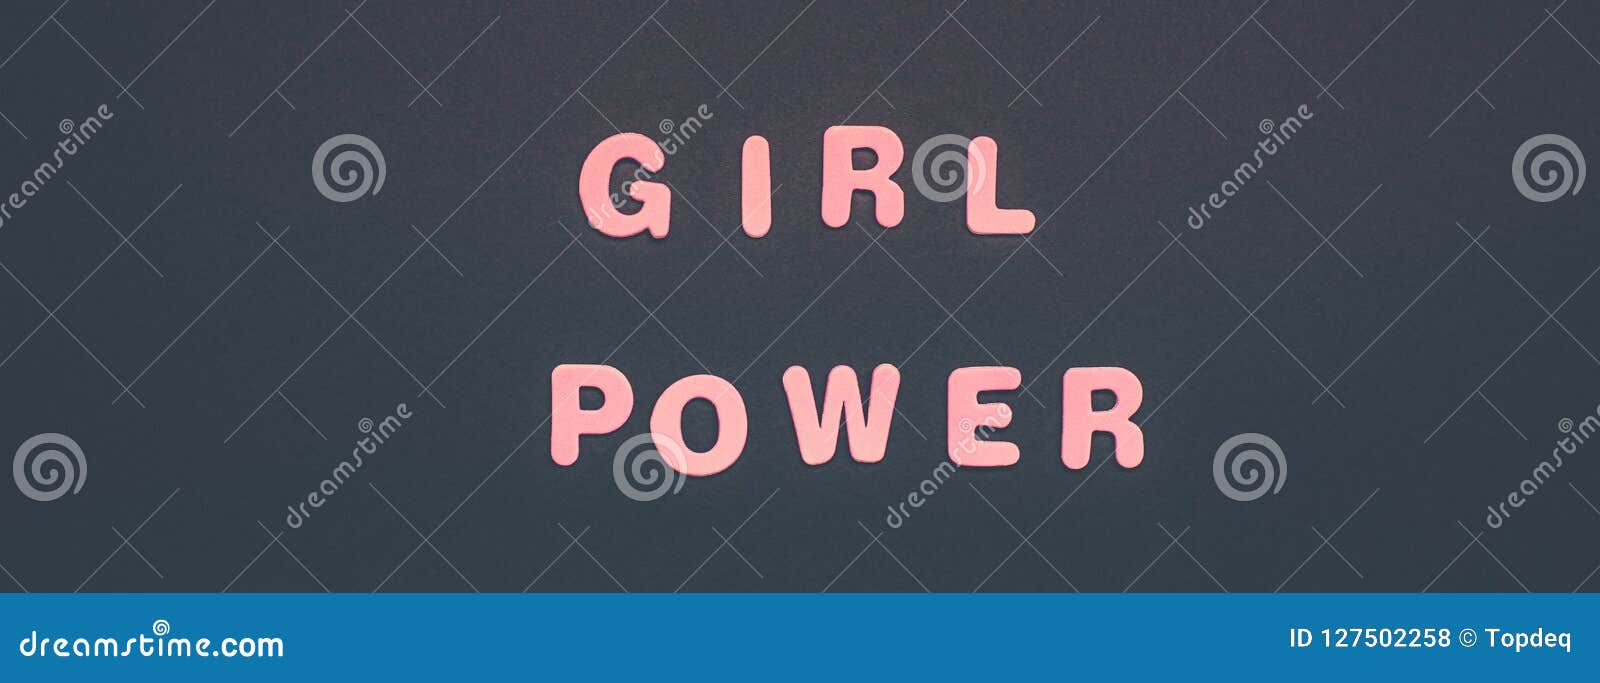 Girl power essay